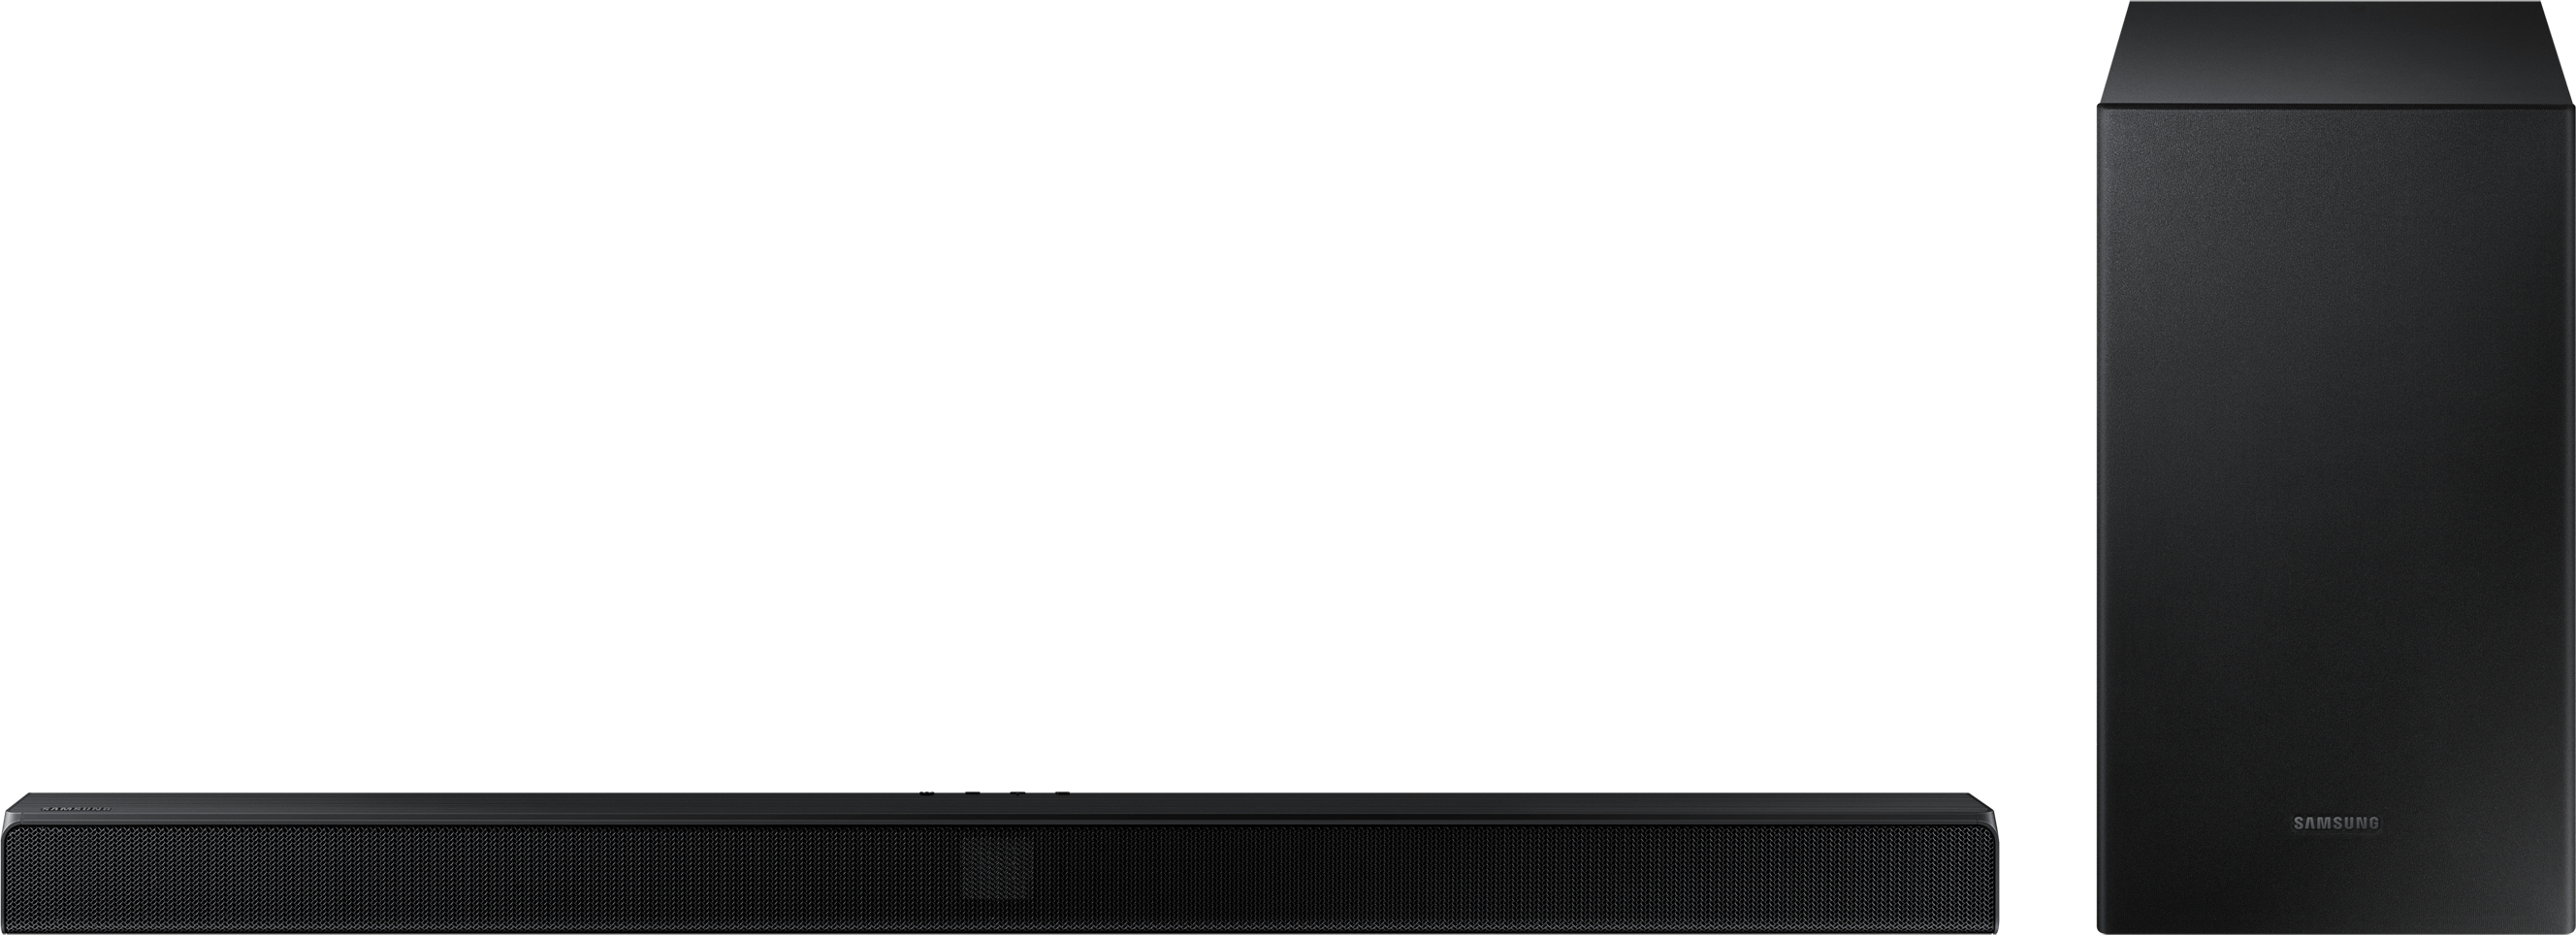 Samsung HW-T550 altavoz soundbar 2.1 canales 320 W Negro